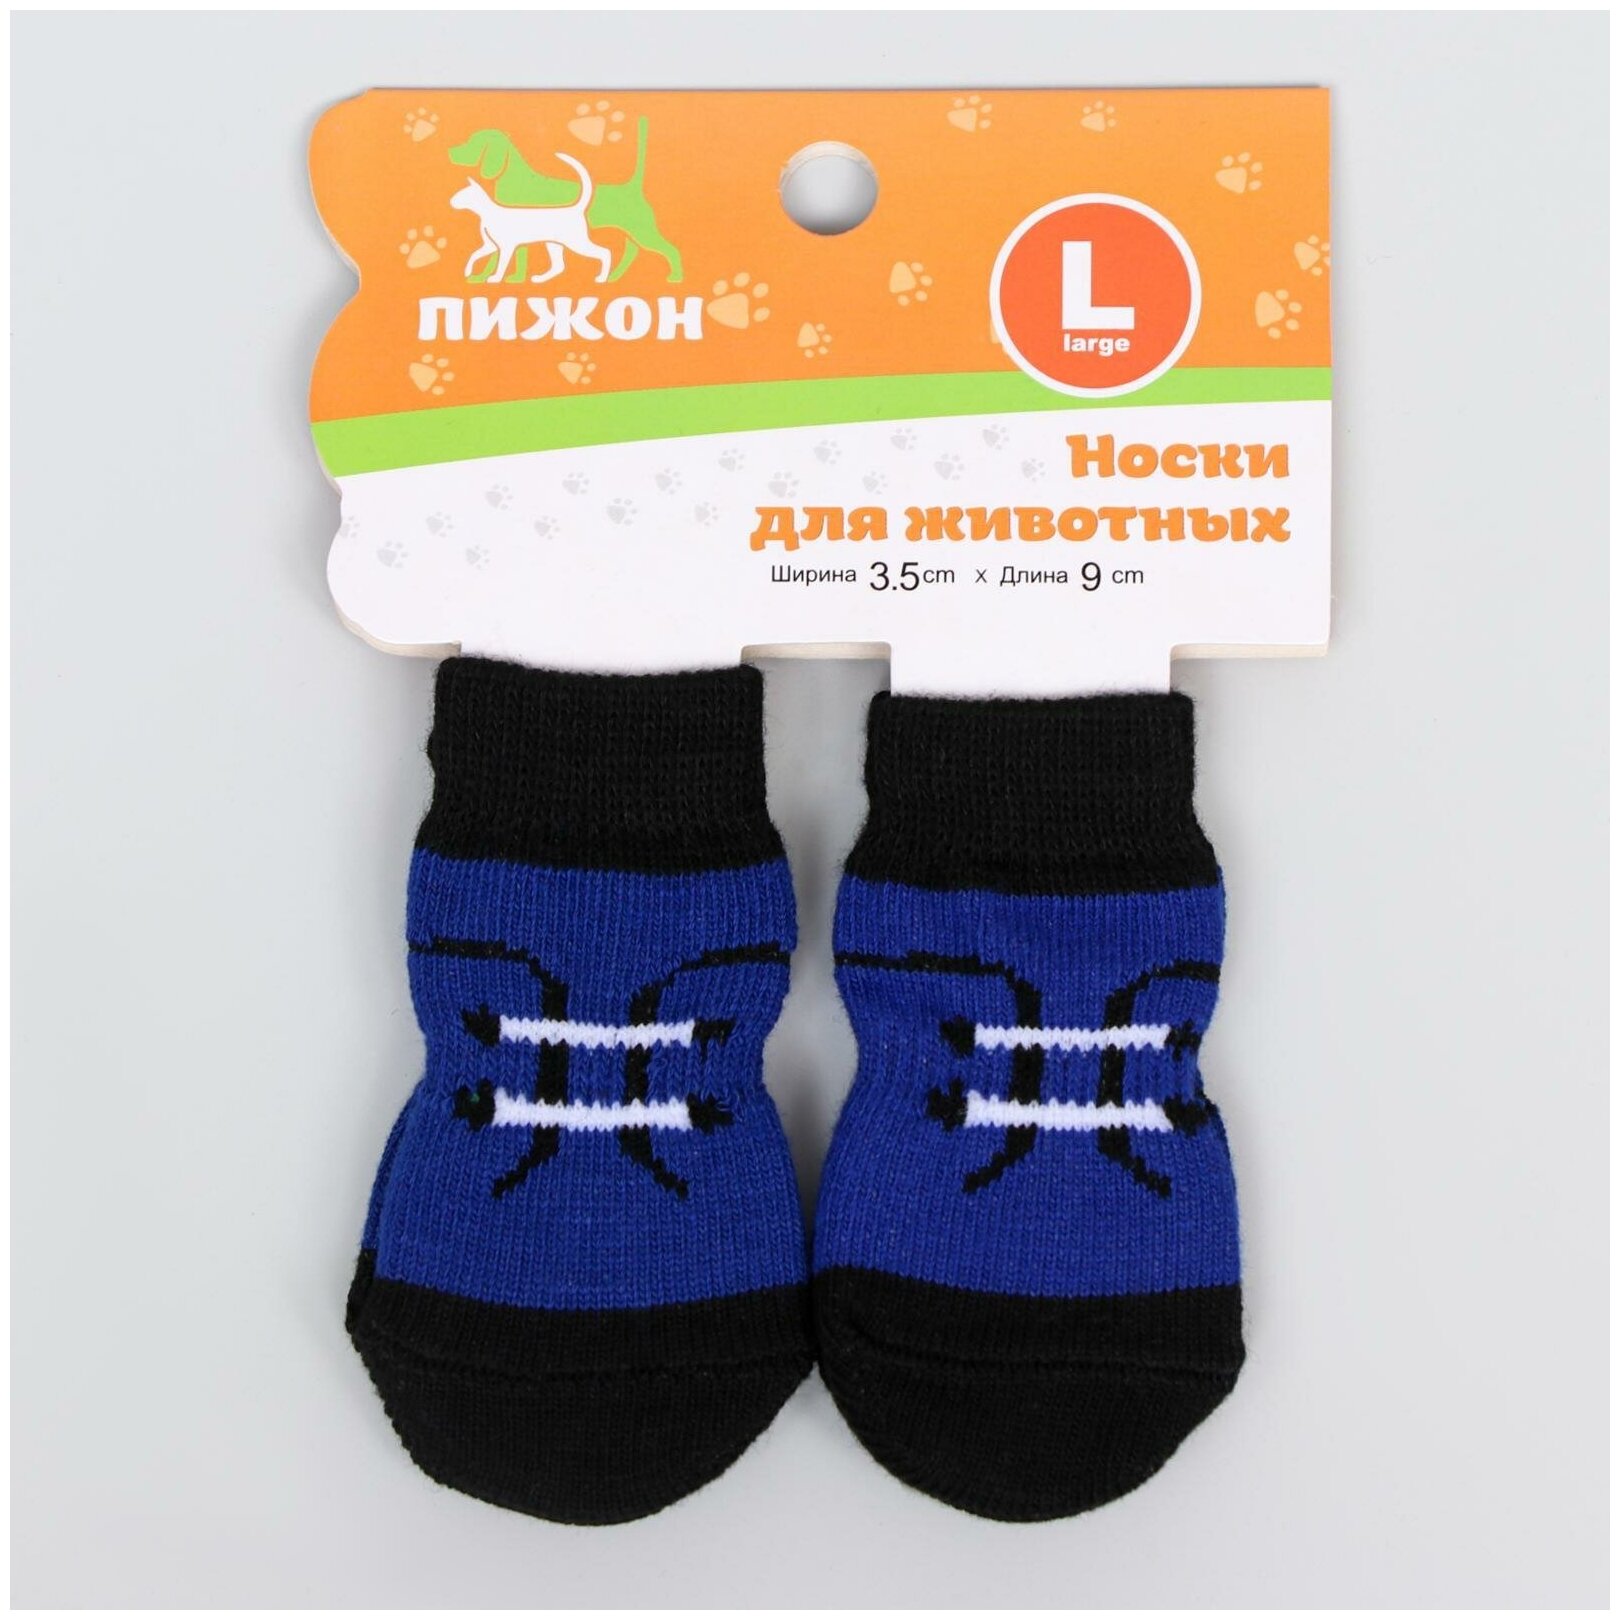 Носки нескользящие "Шнурки", размер L (3,5/5 * 9 см), набор 4 шт - фотография № 3